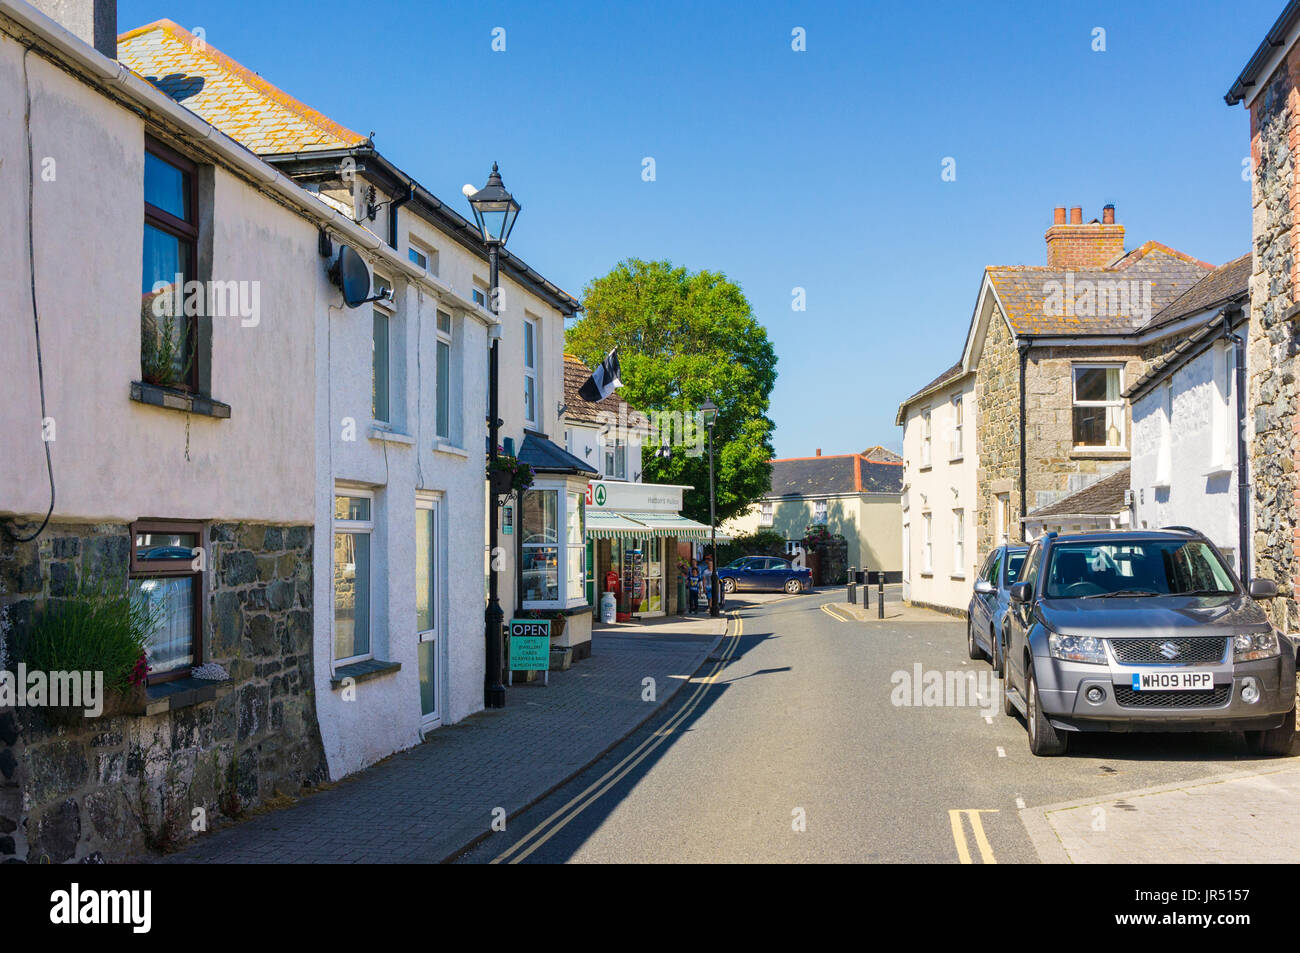 Calle de la aldea de parteluz, Cornwall, Inglaterra, Reino Unido. Foto de stock